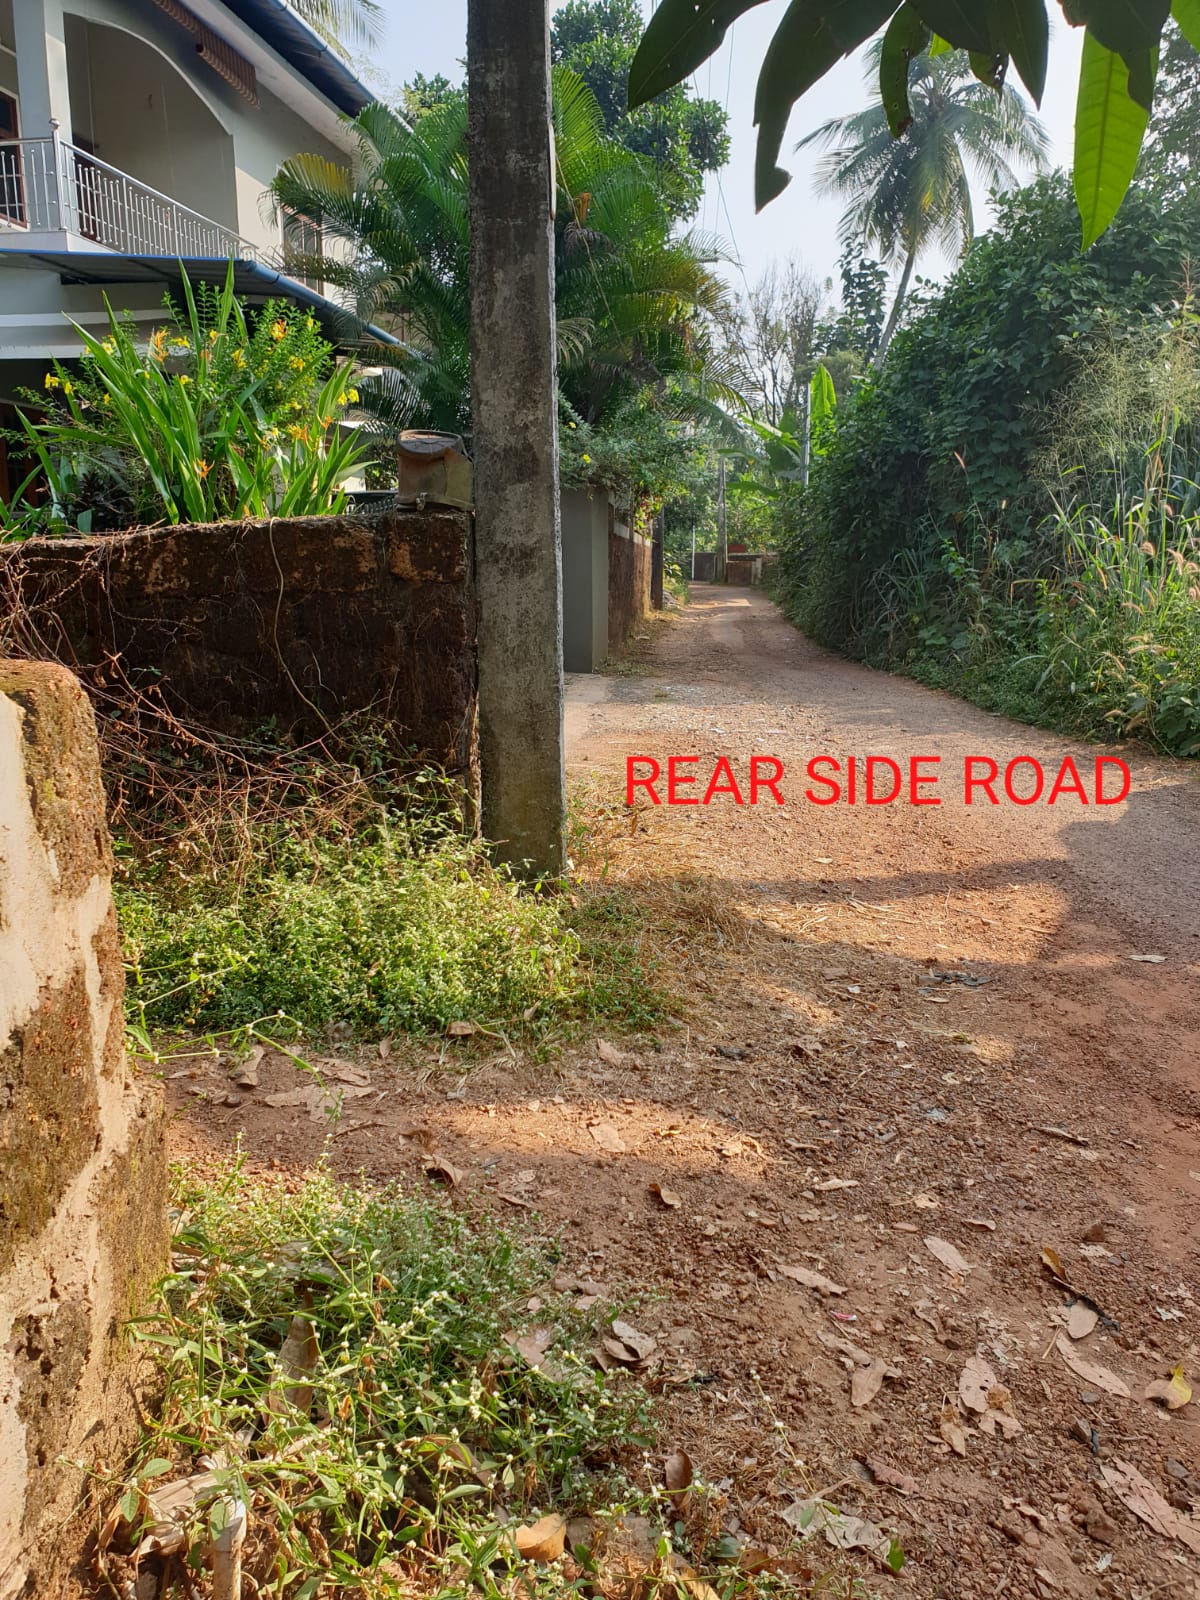 Rear side road